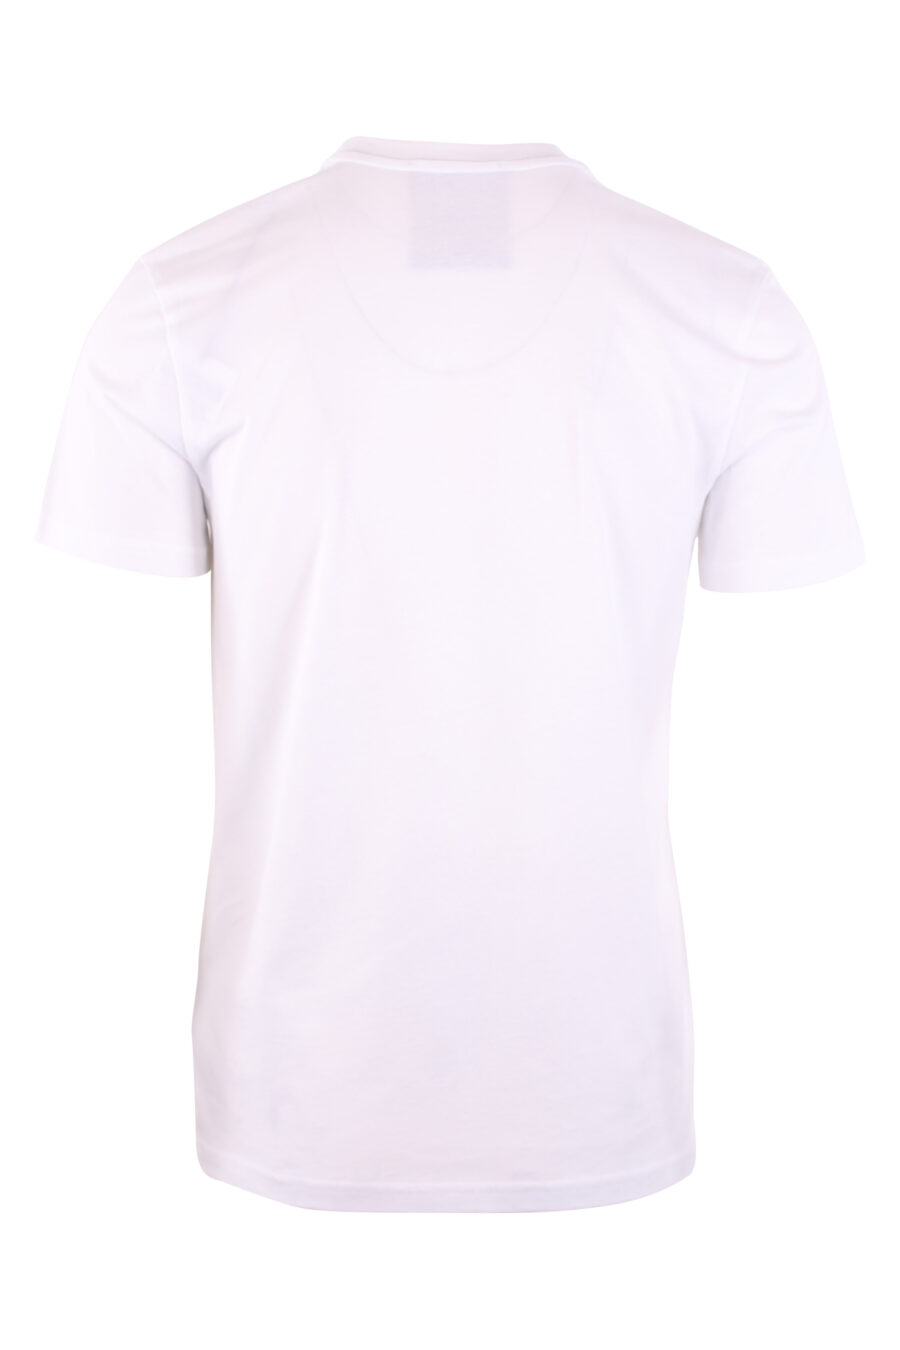 T-shirt branca com o logótipo "fantasy" de Milão - IMG 3127